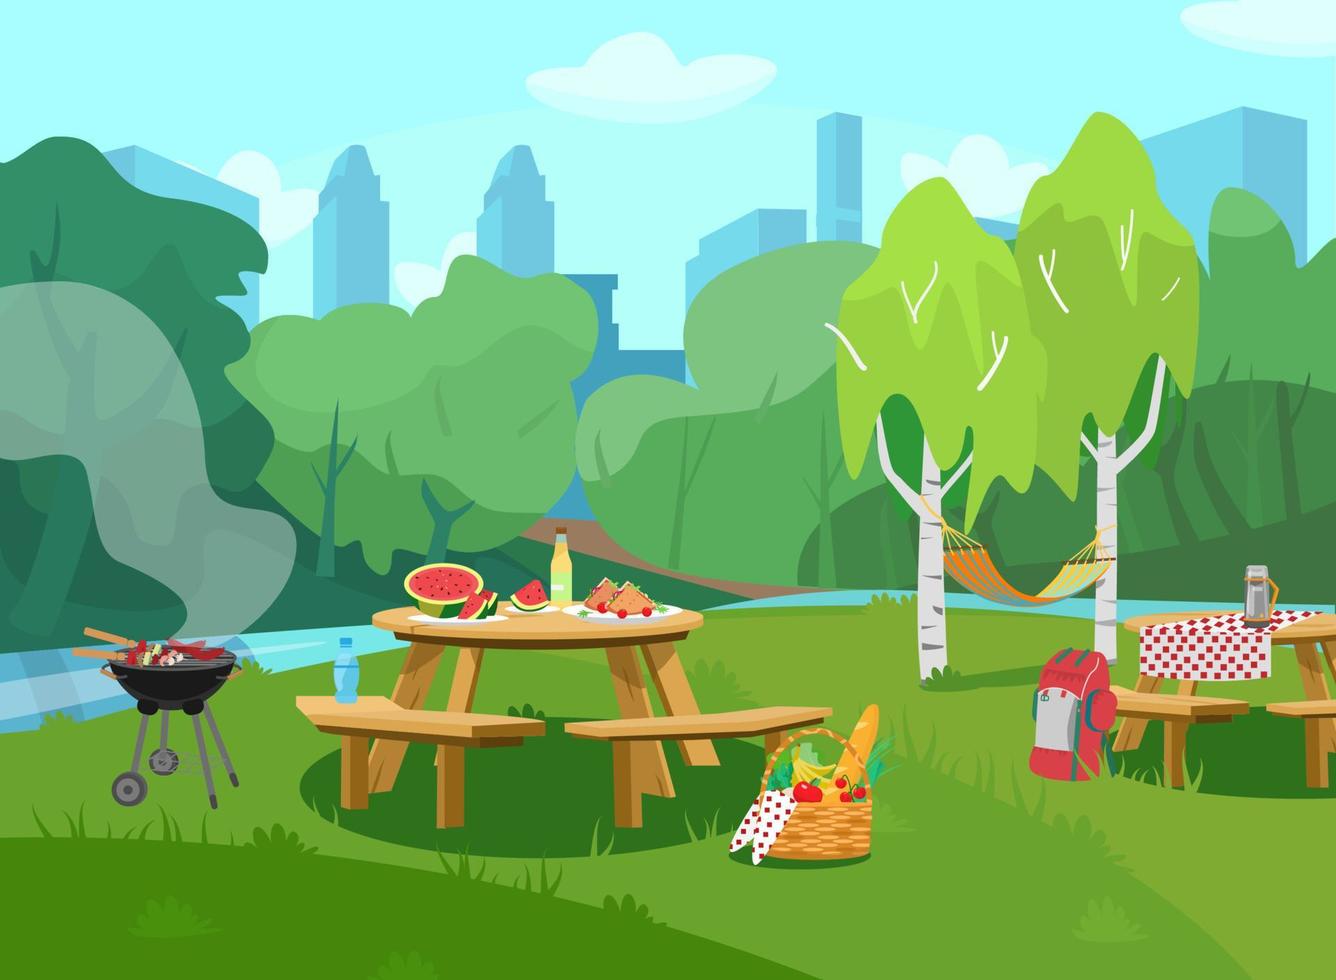 vectorillustratie van parkscène in stad met tafels met eten en barbecue. stadsgezicht op de achtergrond. picknickmand met fruit, groenten en stokbrood. cartoon-stijl. vector